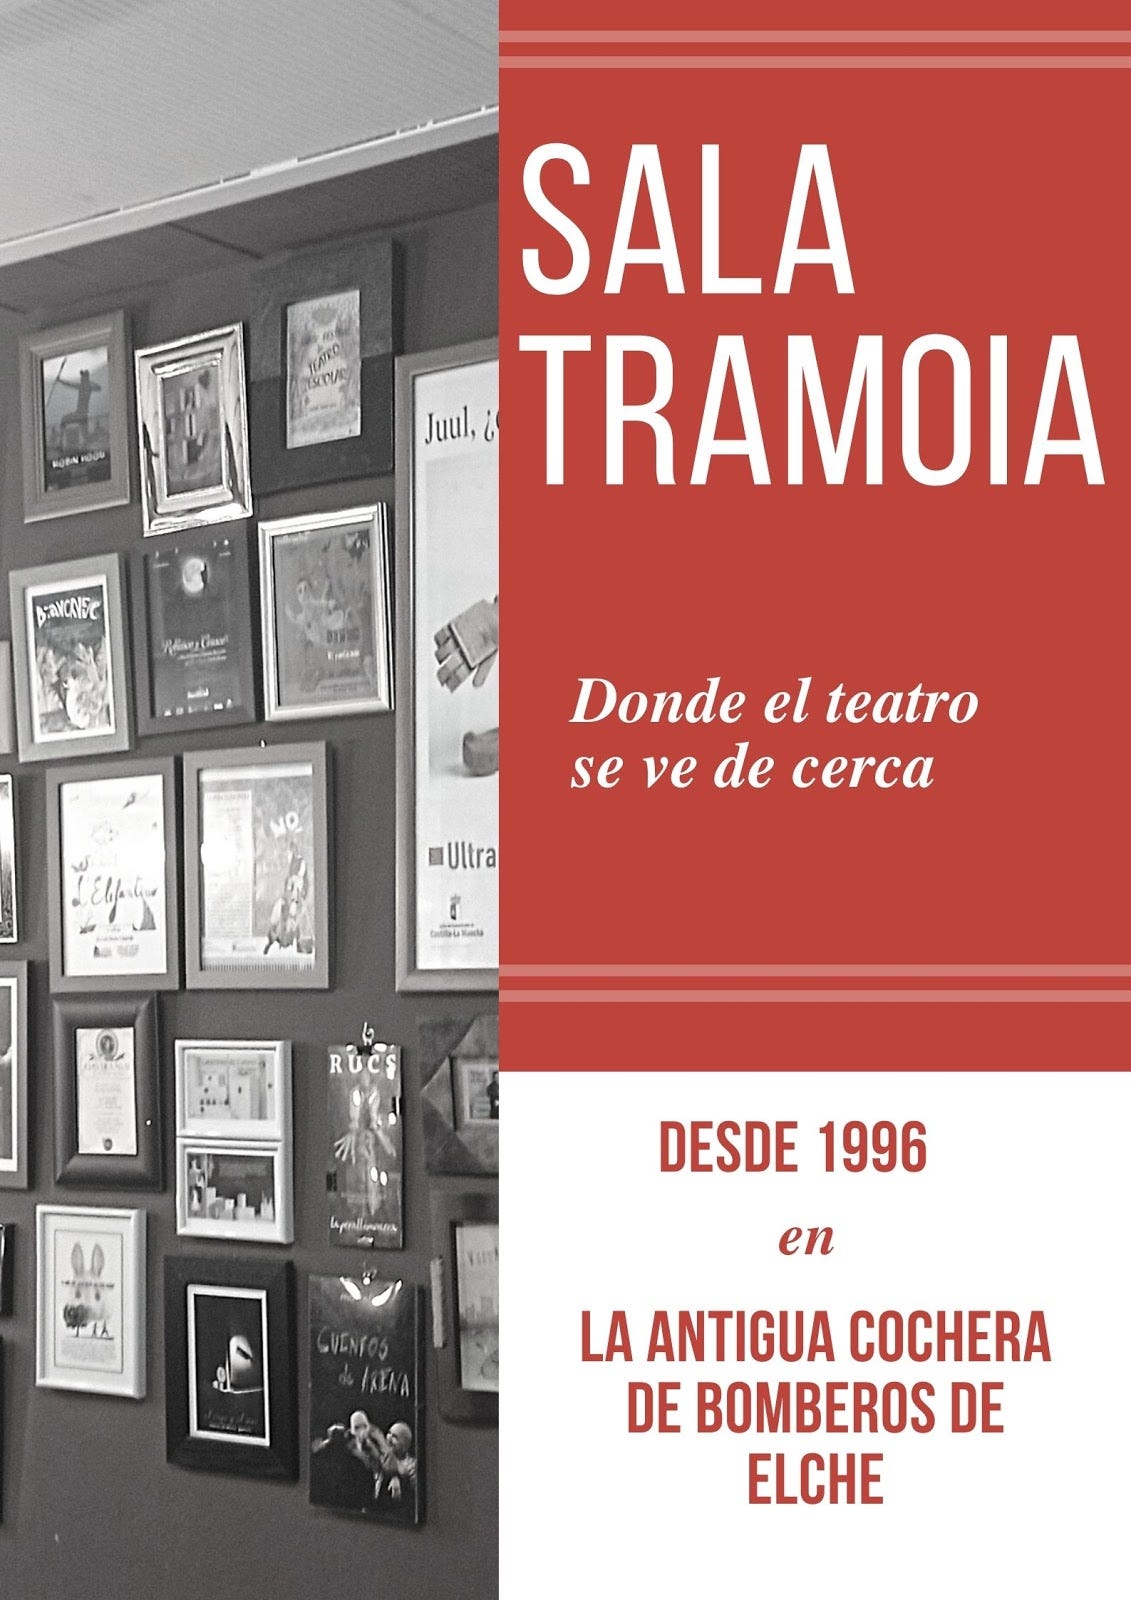 Sala Tramoia, dónde niños y jóvenes pueden vivir el teatro de cerca | by  Jose D Elia | Medium